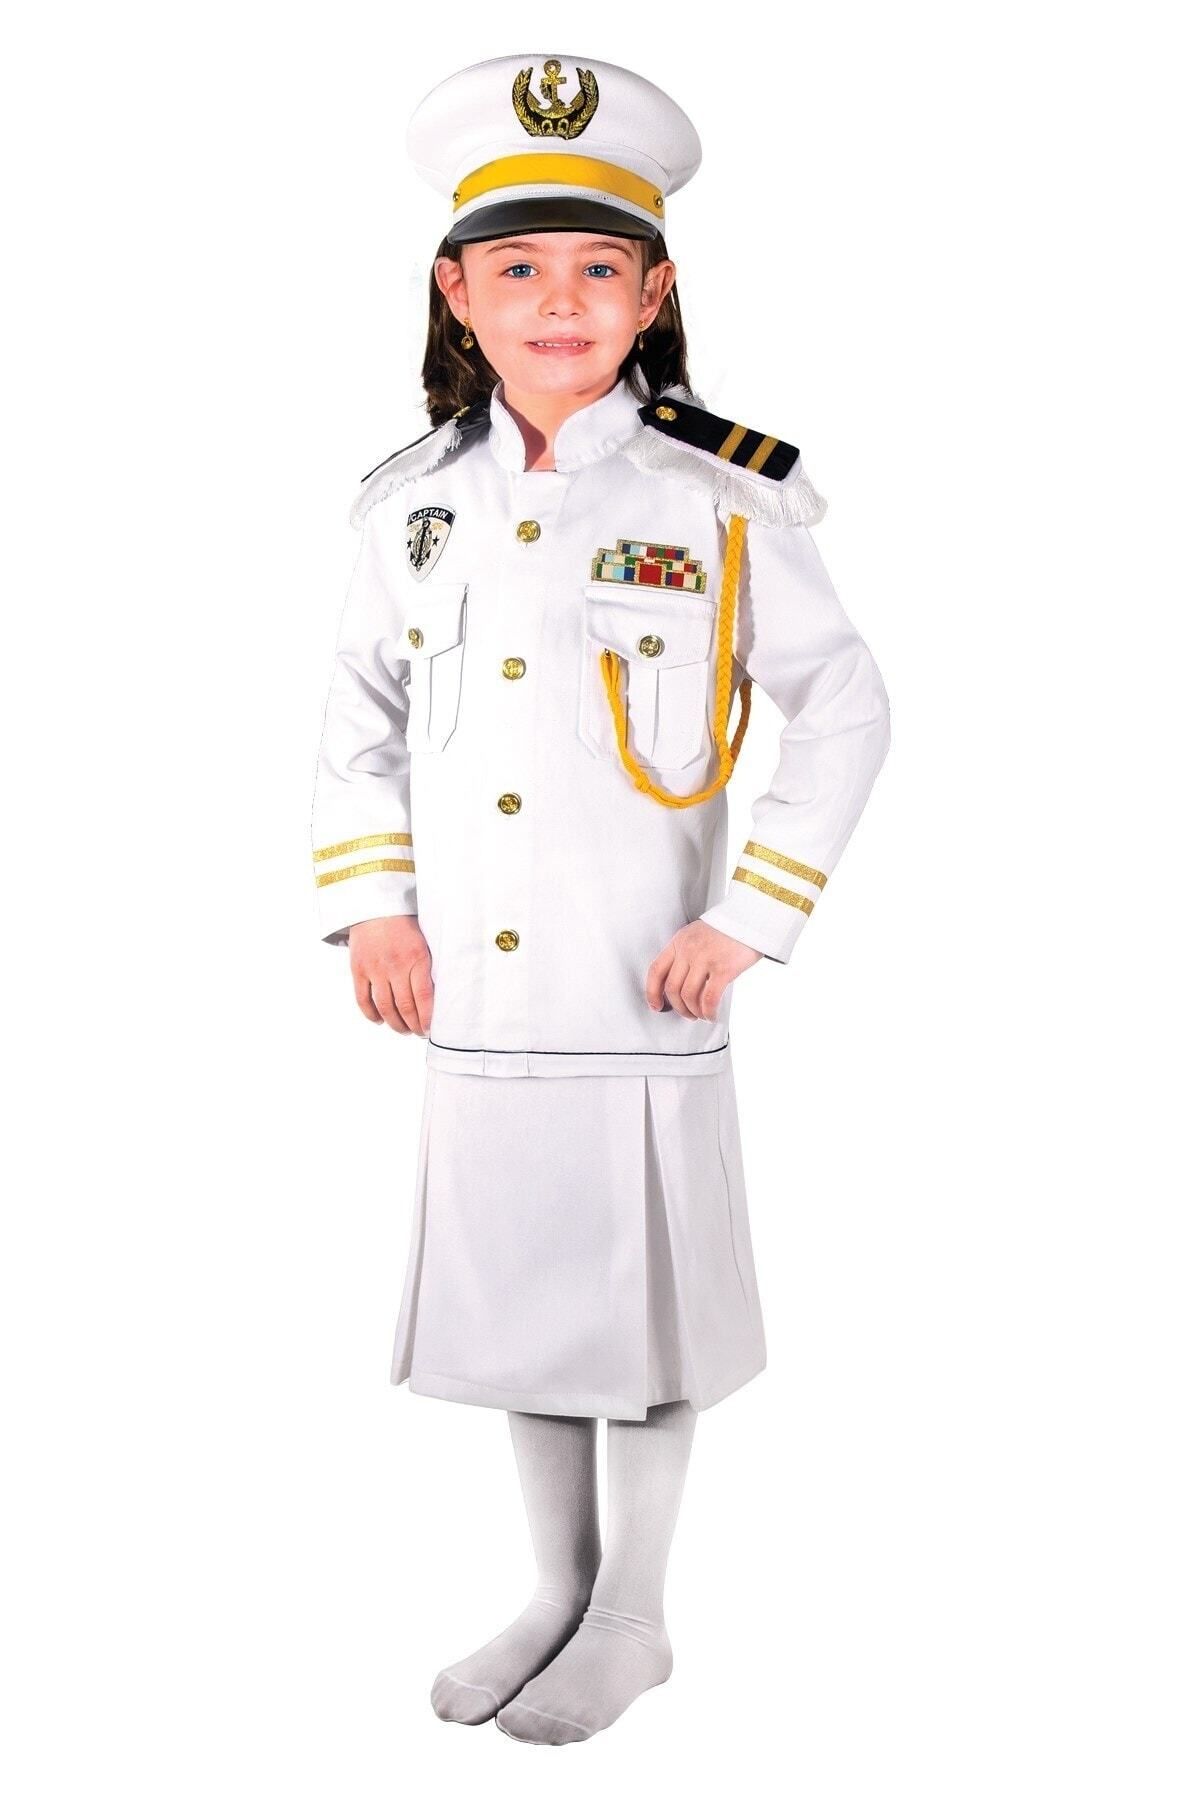 OULABİMİR Kaptan Kız Kostümü Çocuk Kıyafeti